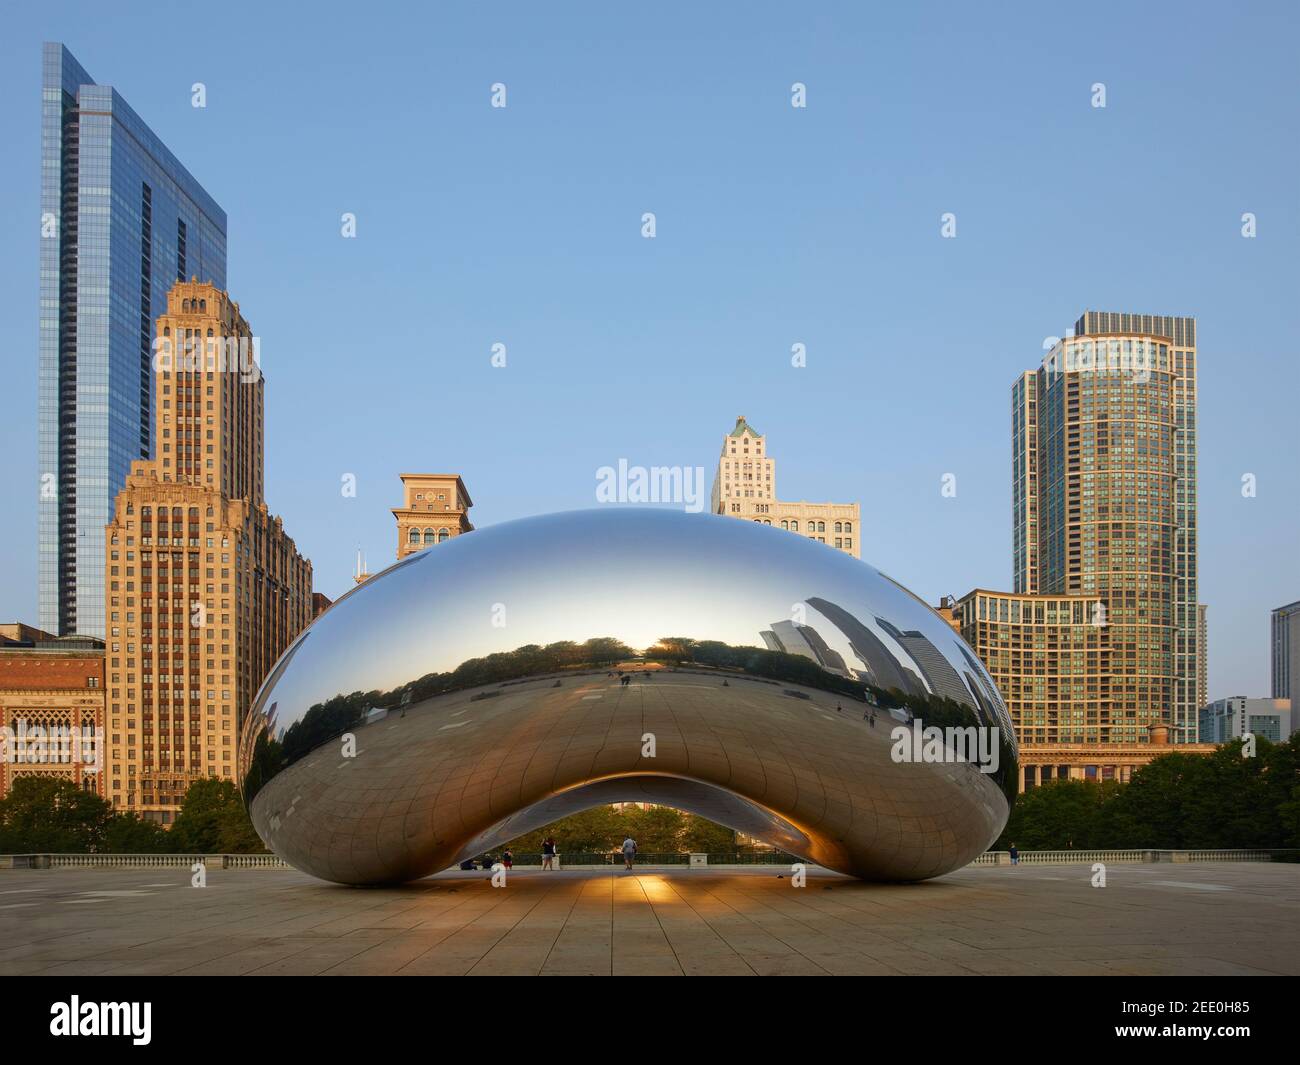 La sculpture Cloud Gate, également connue sous le nom de The Bean, à Millenium Park, Chicago, Illinois, États-Unis Banque D'Images